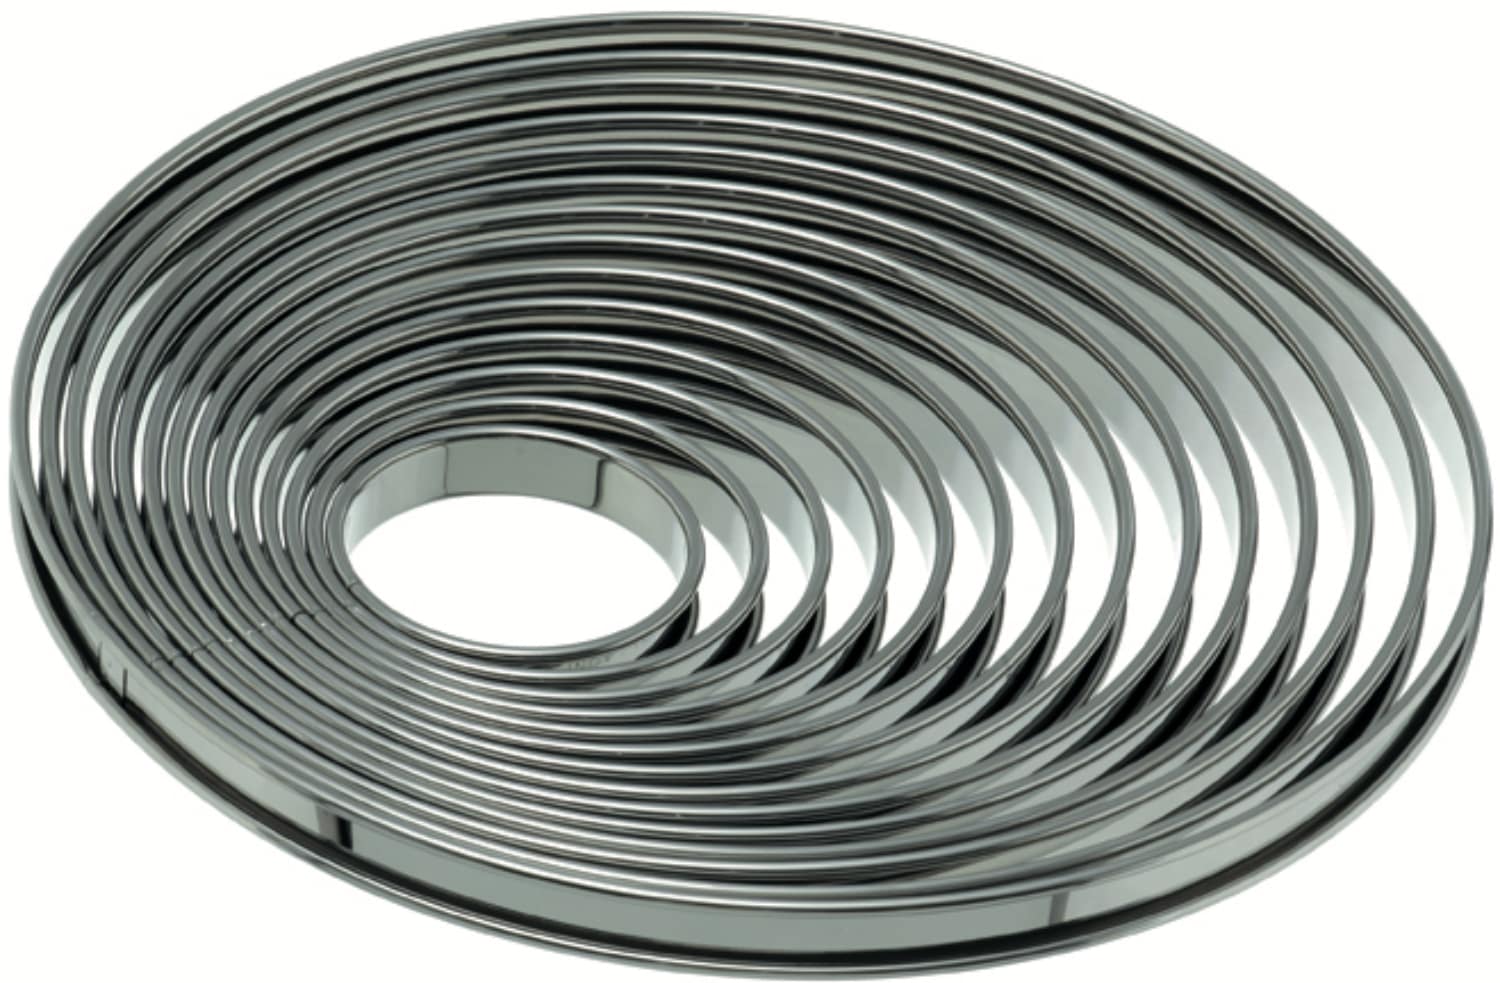 Tart rings folded rim stainless steel